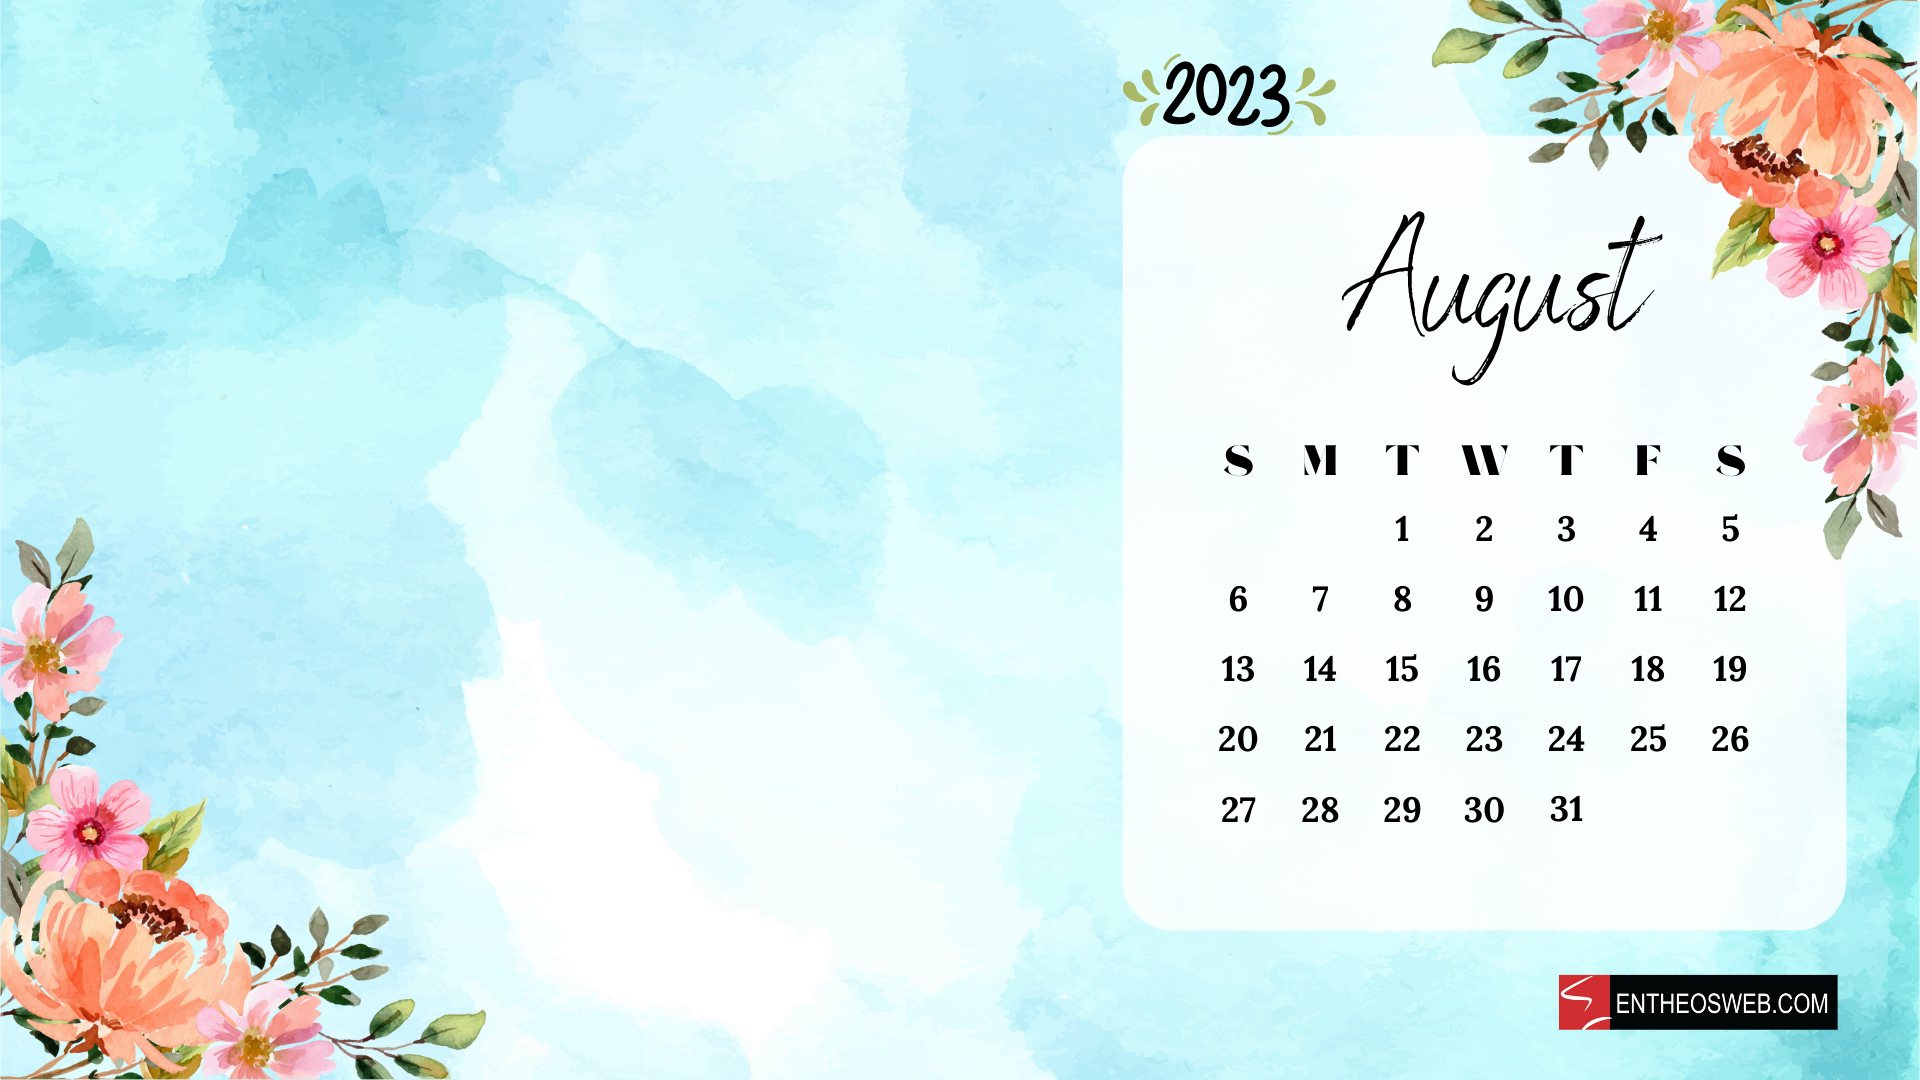 August 2023 Calendar Wallpaper Free August 2023 Calendar Background